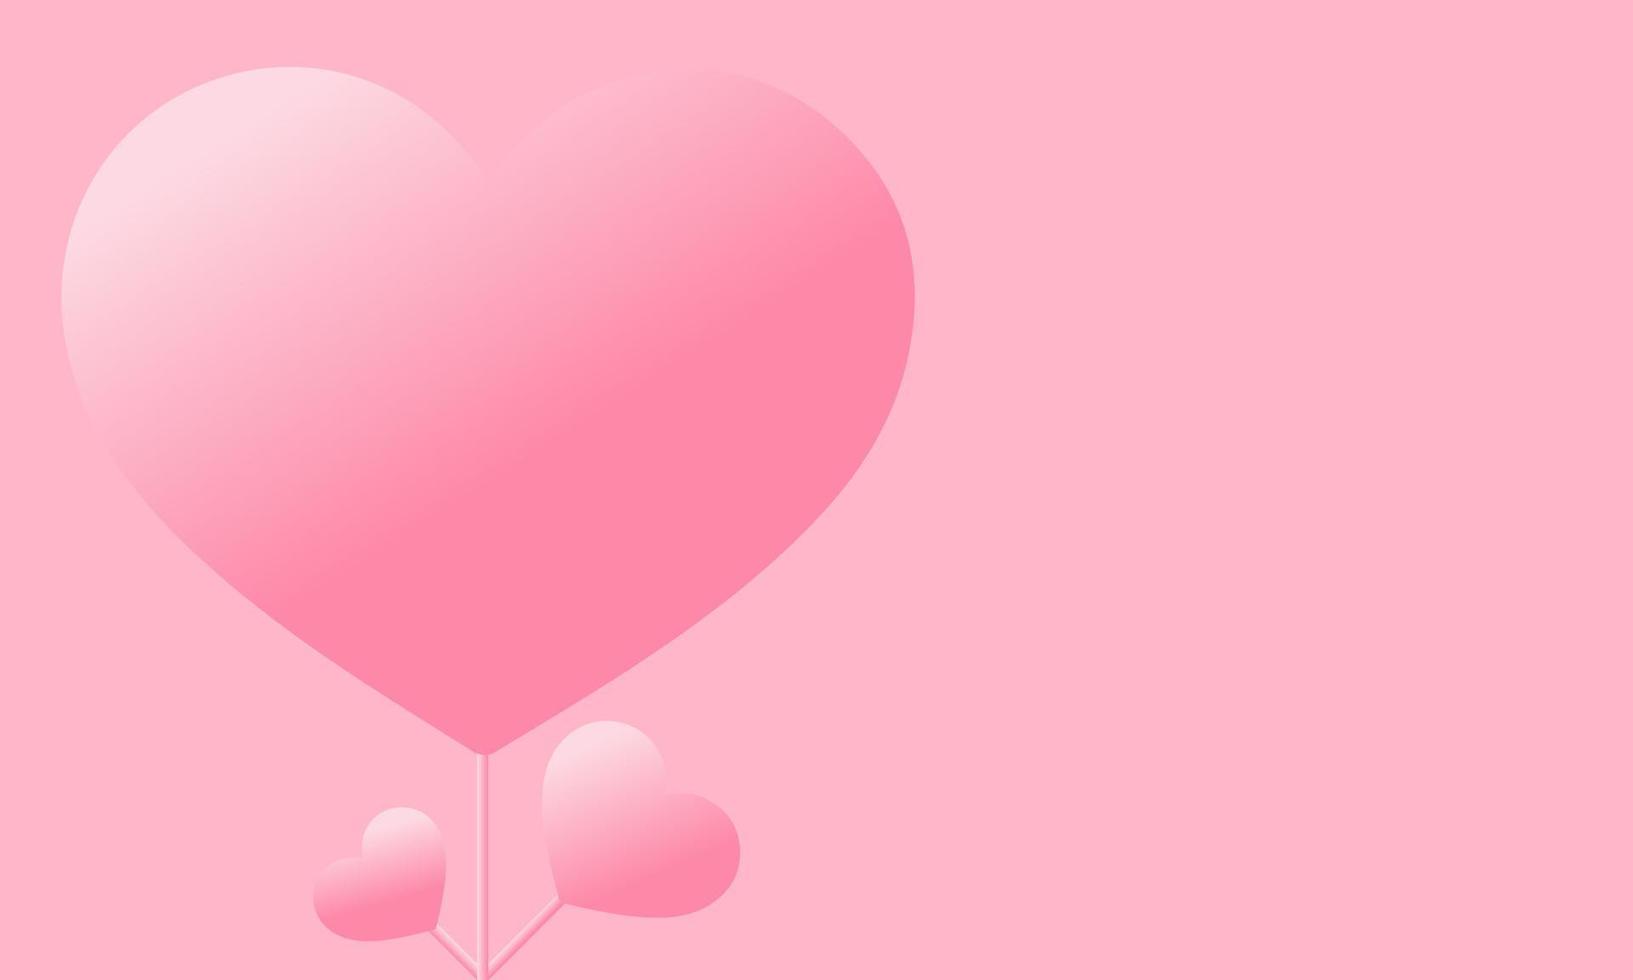 amo ilustração rosa com um coração simples e doce ou exibição de amor, com fundo espacial, adequado para o conteúdo do dia dos namorados, conteúdo carinhoso e amoroso. vetor